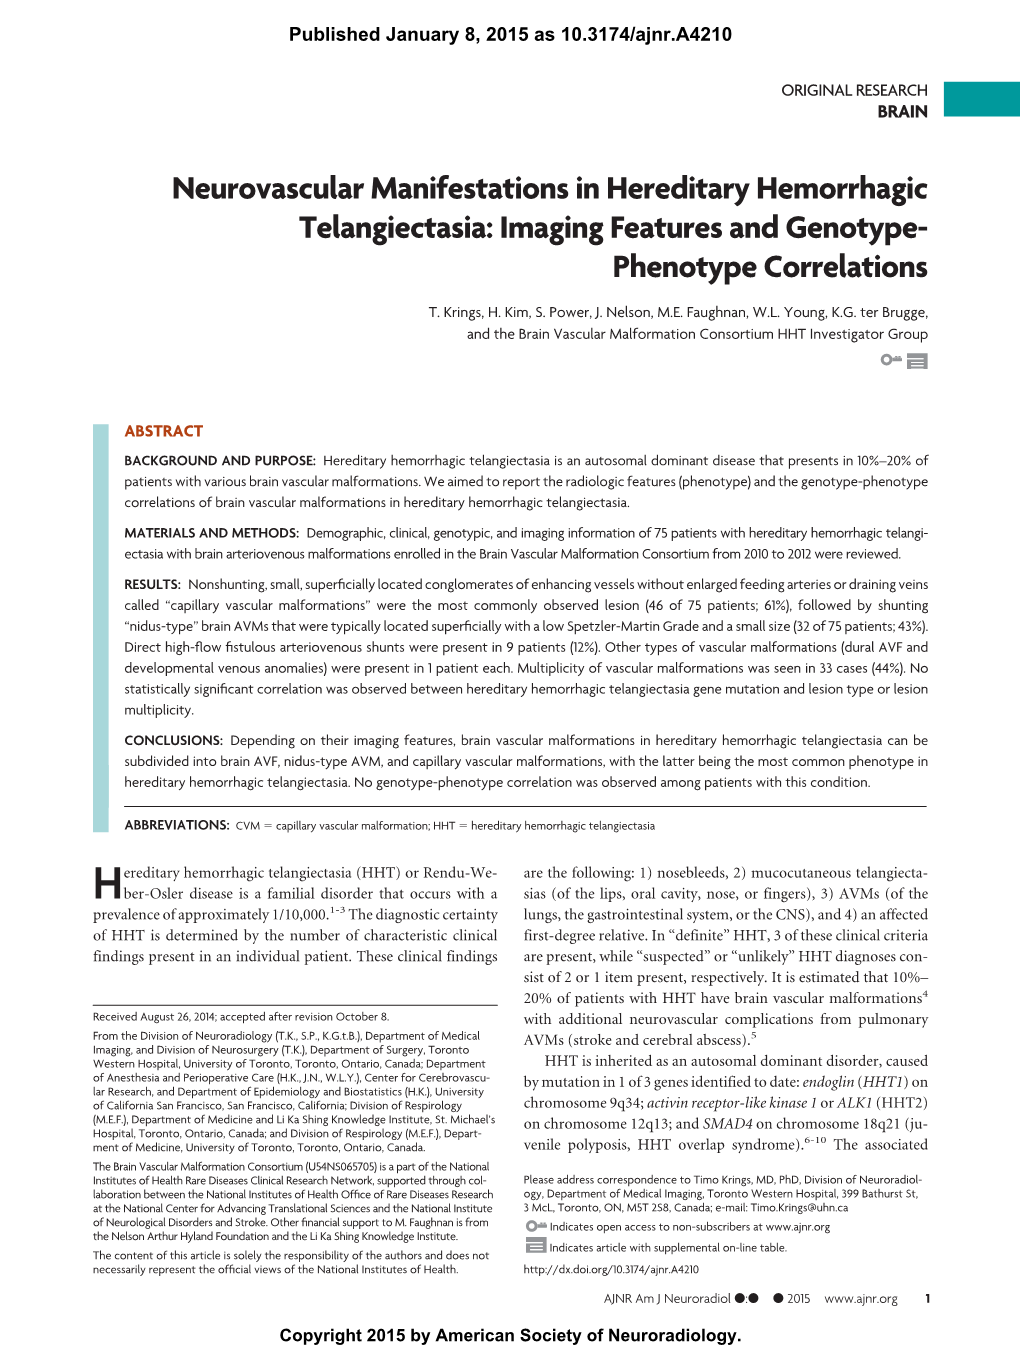 Neurovascular Manifestations in Hereditary Hemorrhagic Telangiectasia: Imaging Features and Genotype- Phenotype Correlations